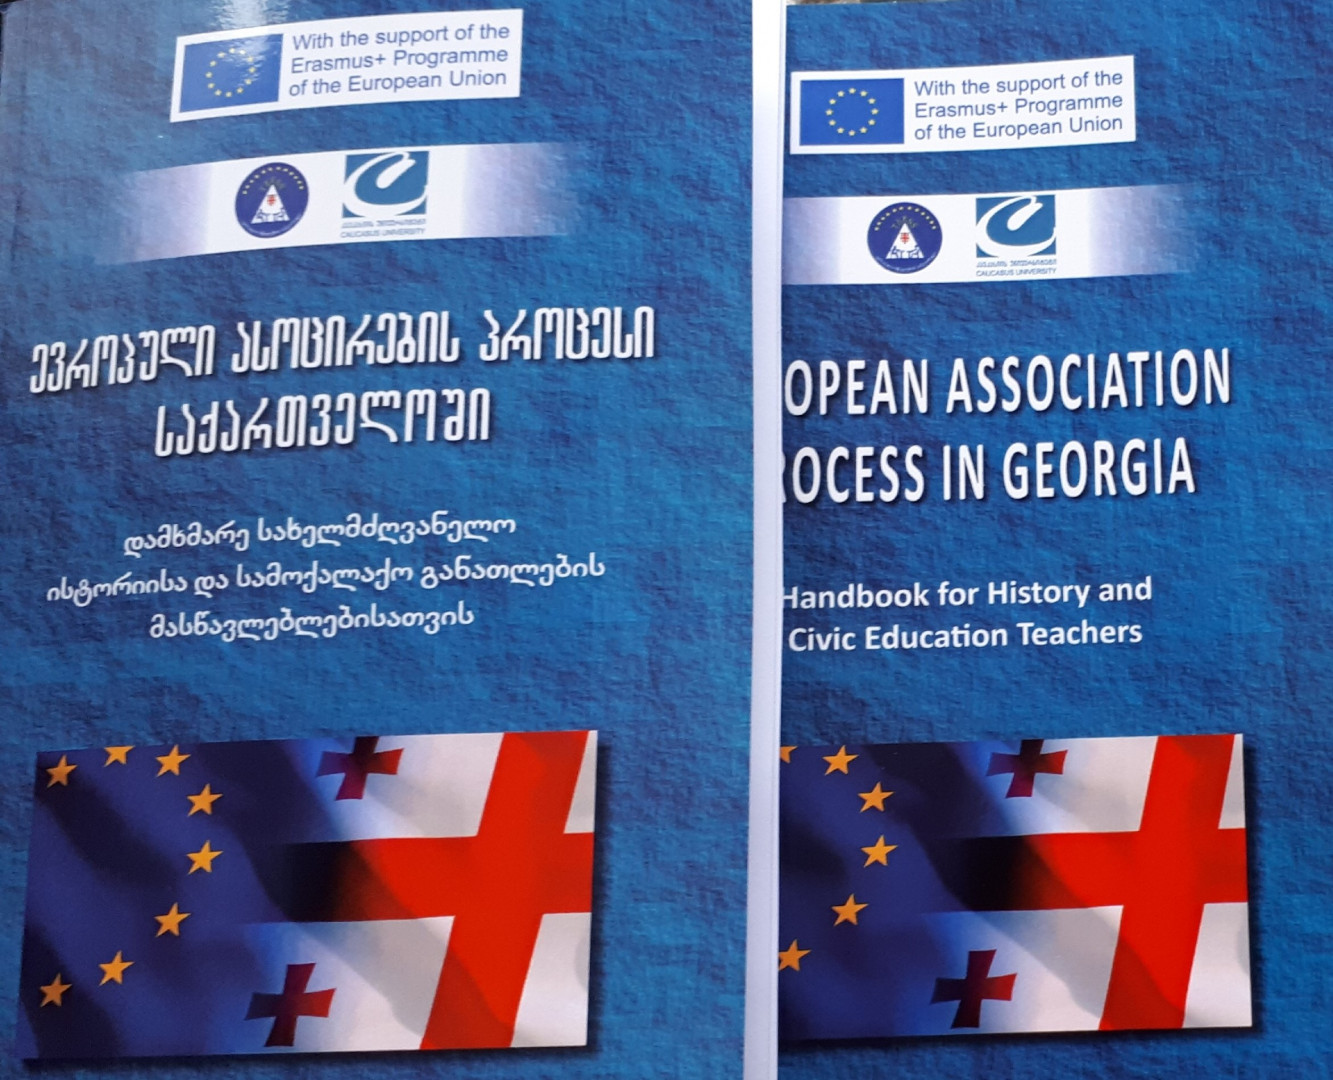  “ევროპული ასოცირების პროცესი საქართველოში“ - მასწავლებელთა პროფესიული განვითარების ეროვნული ცენტრი